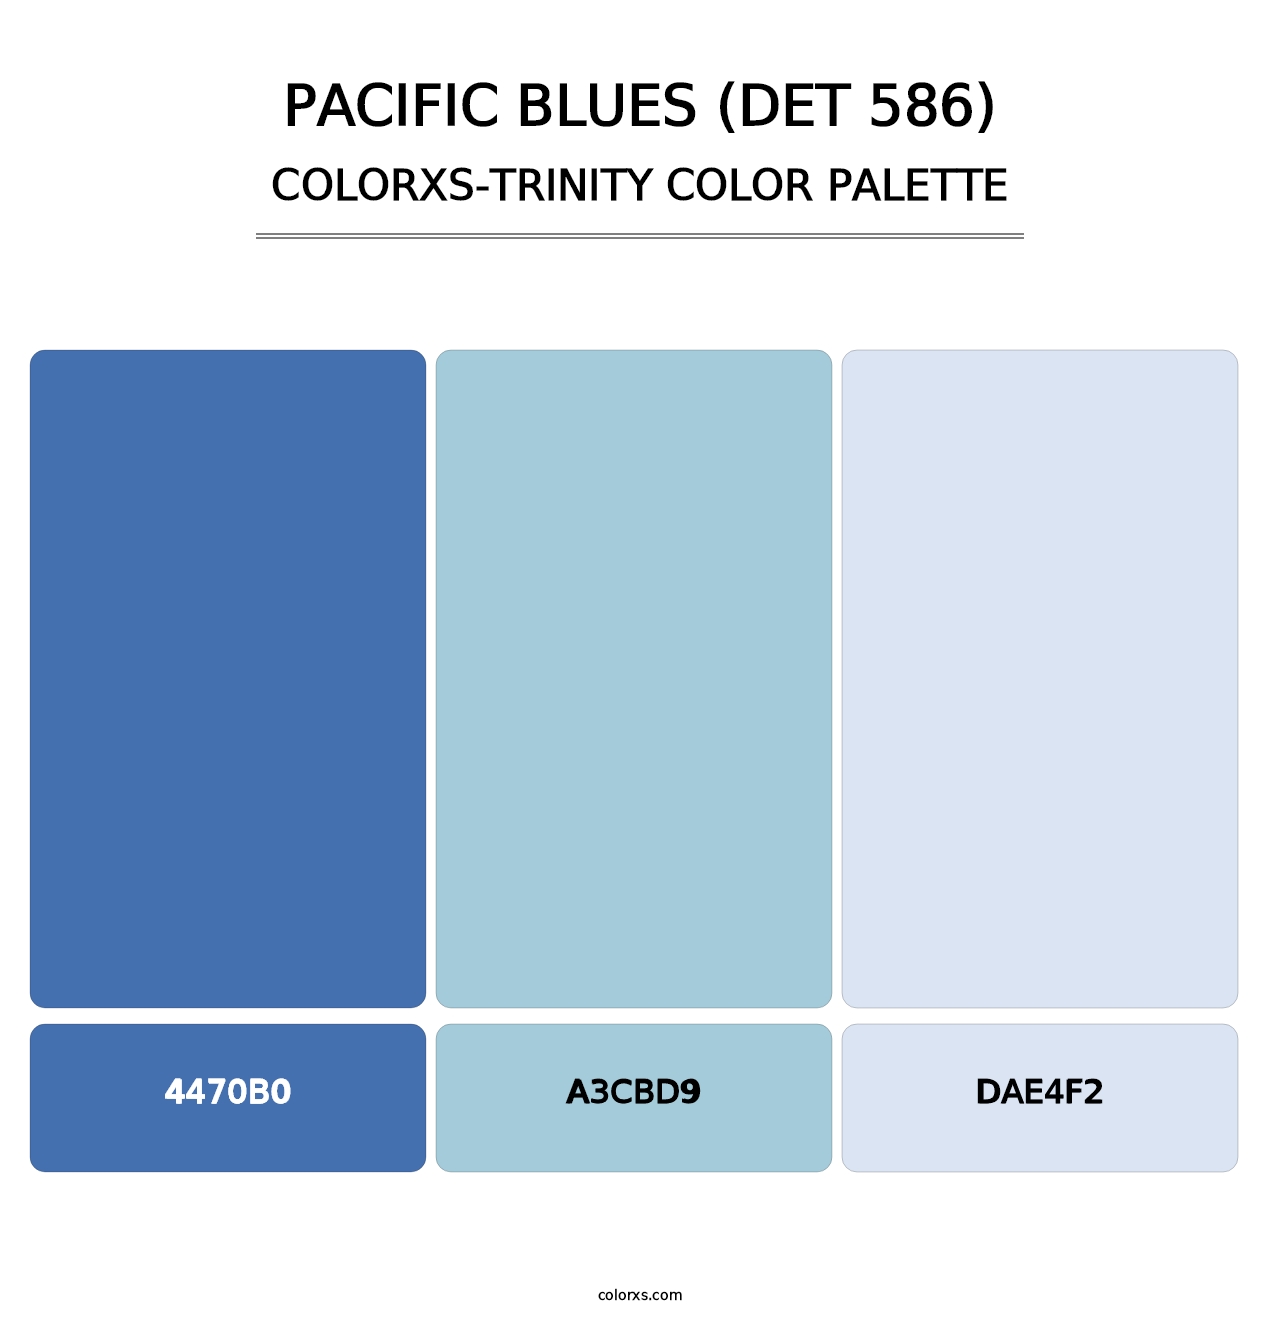 Pacific Blues (DET 586) - Colorxs Trinity Palette